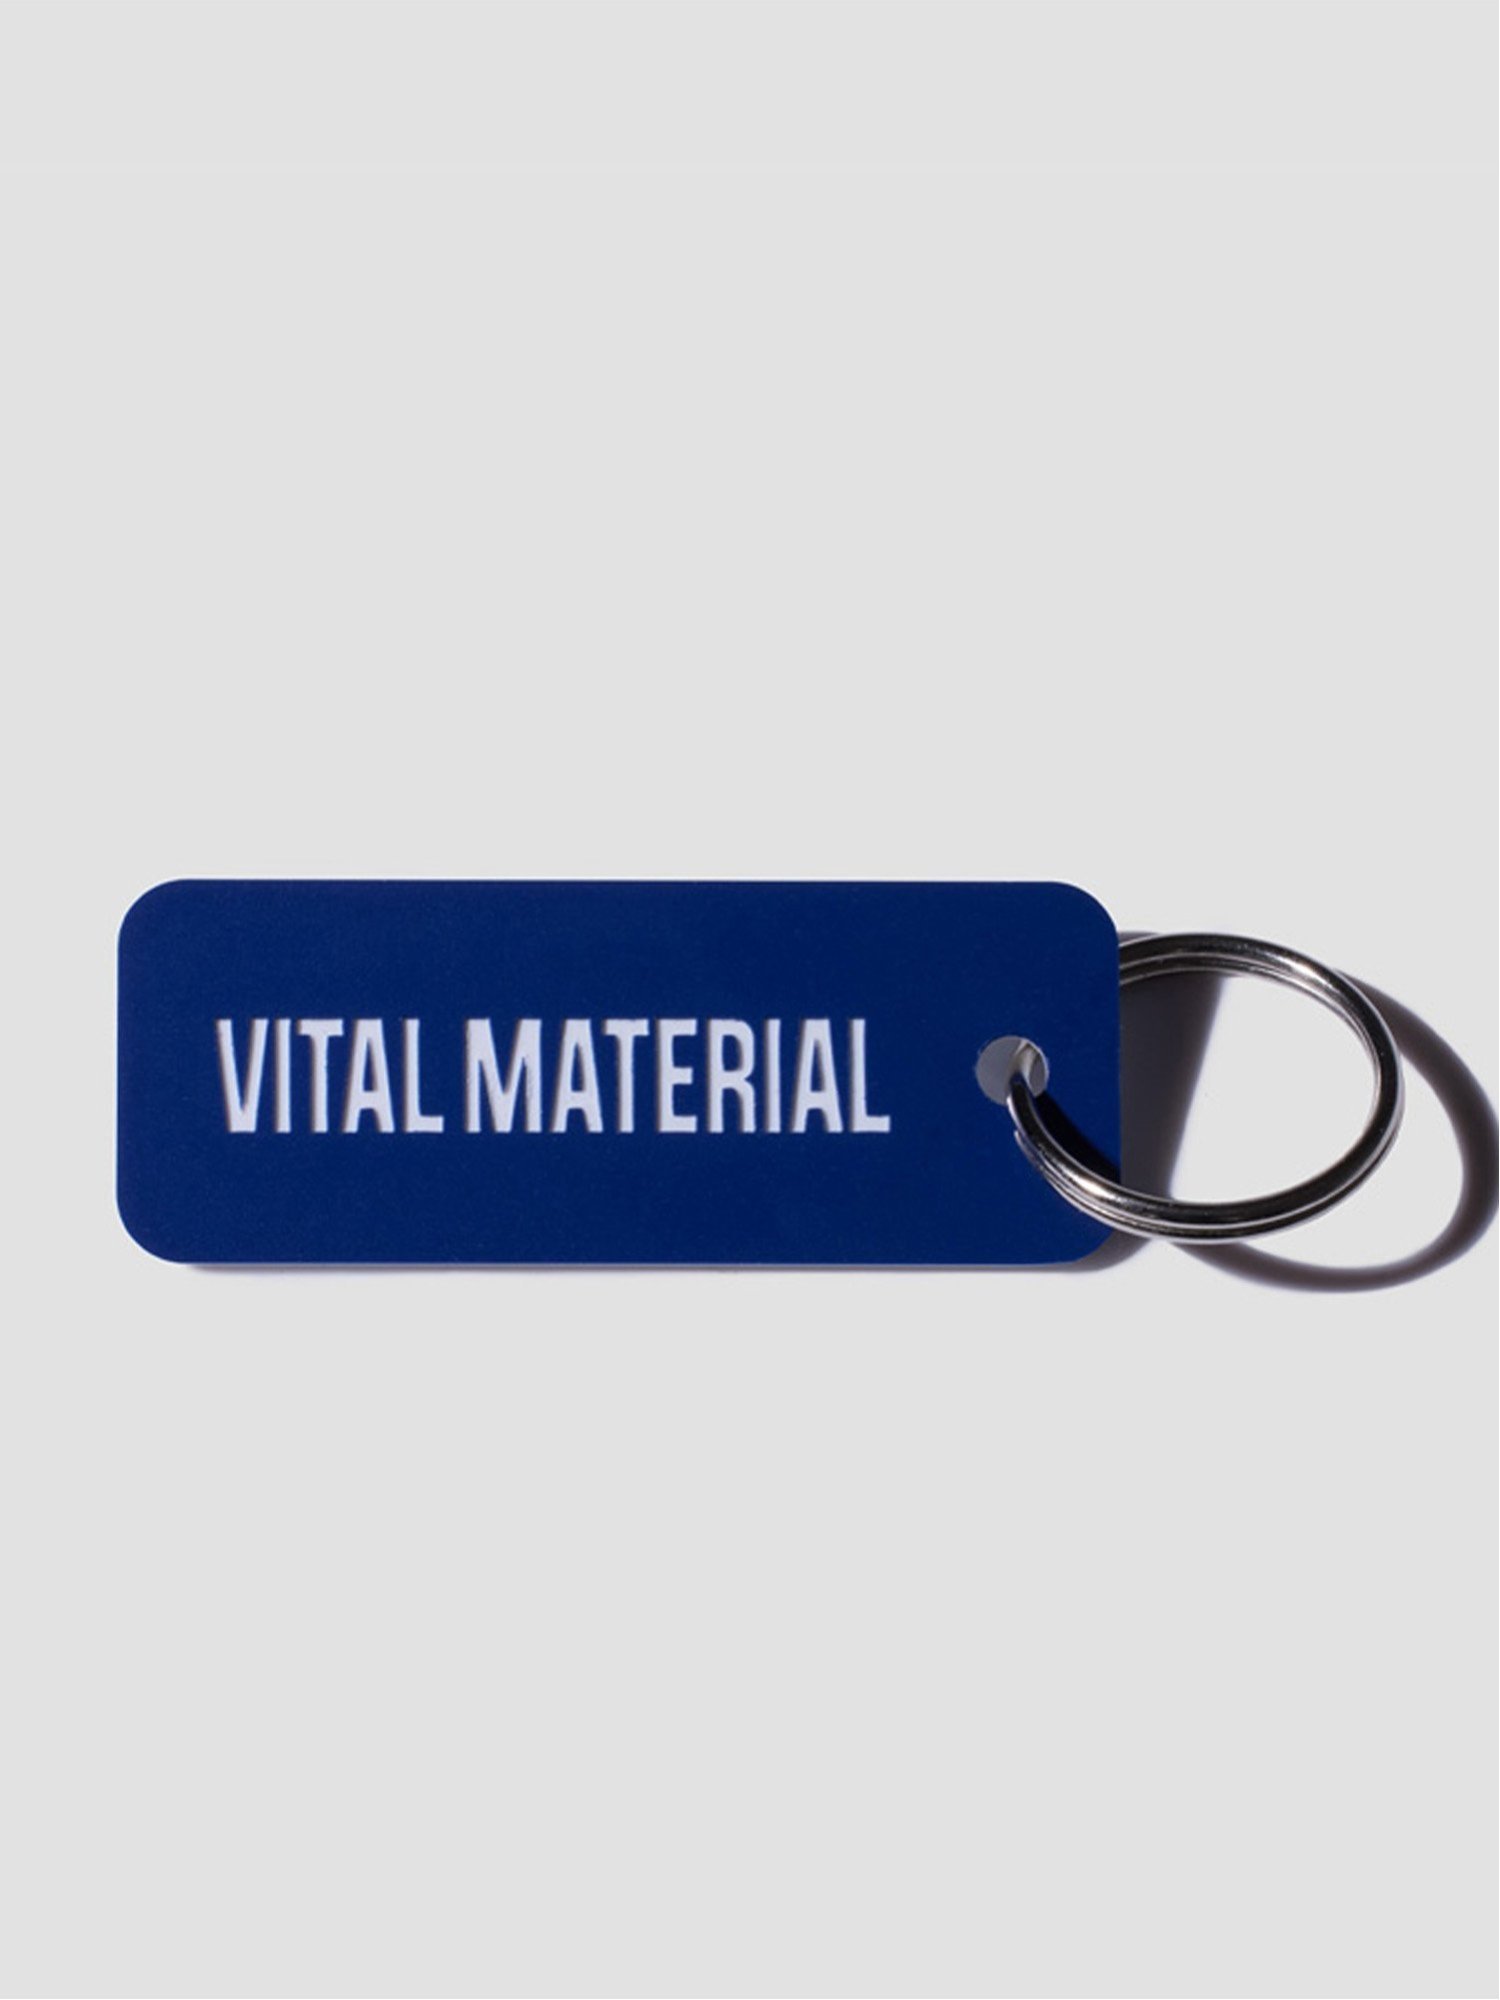 楽天Rakuten FashionVITAL MATERIAL VITAL MATERIAL × Various Keytags BLUEBERRY / WHITE ヴァイタル マテリアル ファッション雑貨 チャーム・キーチェーン ブルー